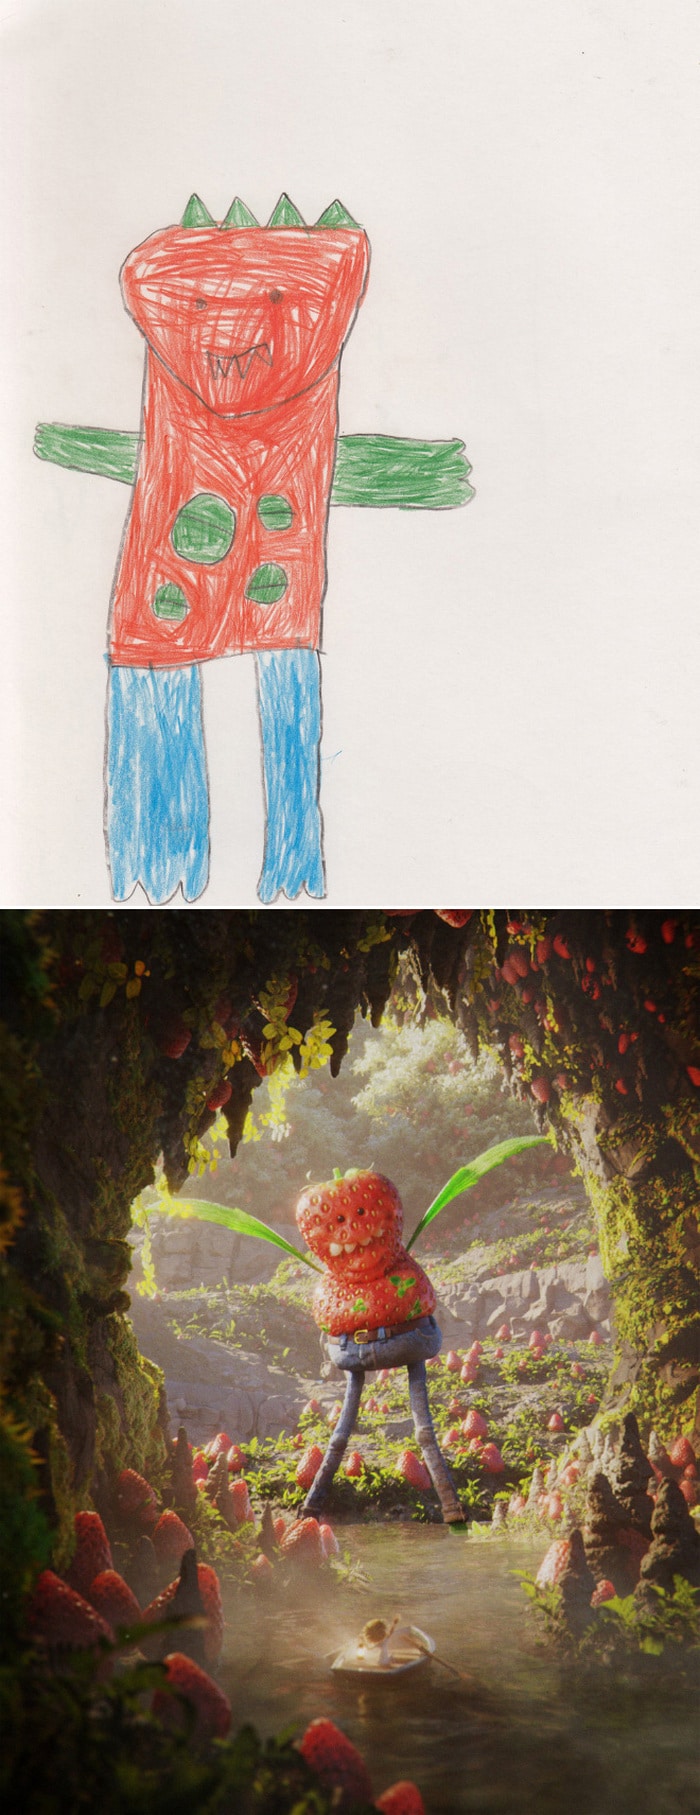 Projeto Monstro - Crianças desenham monstros e artistas recriam com sua arte 19